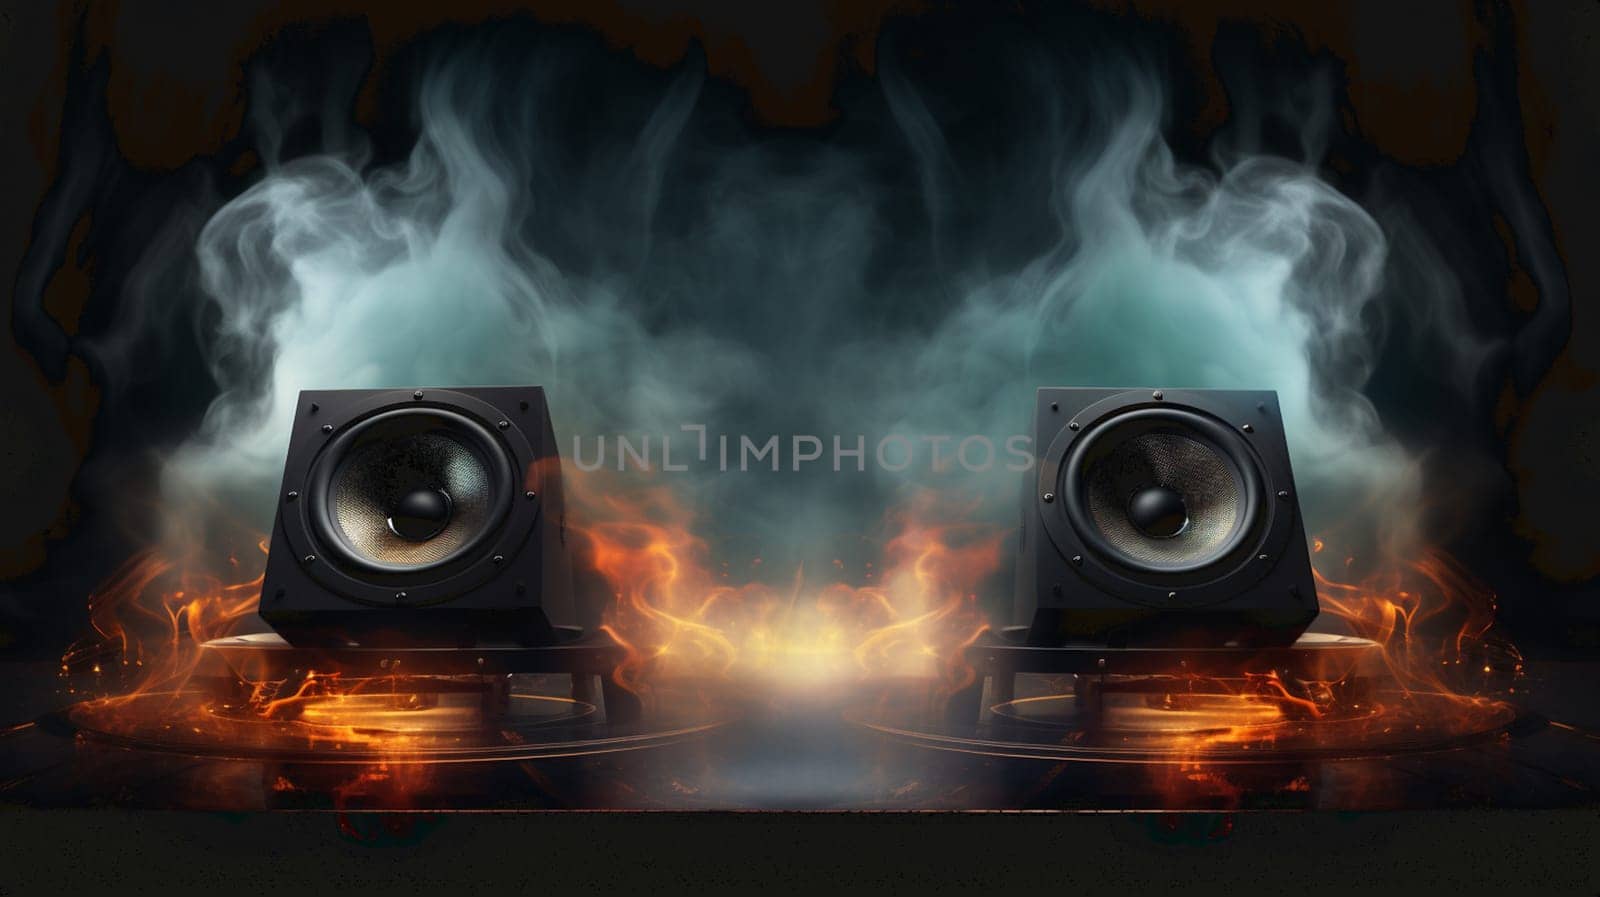 Burning speaker music style background. High quality photo